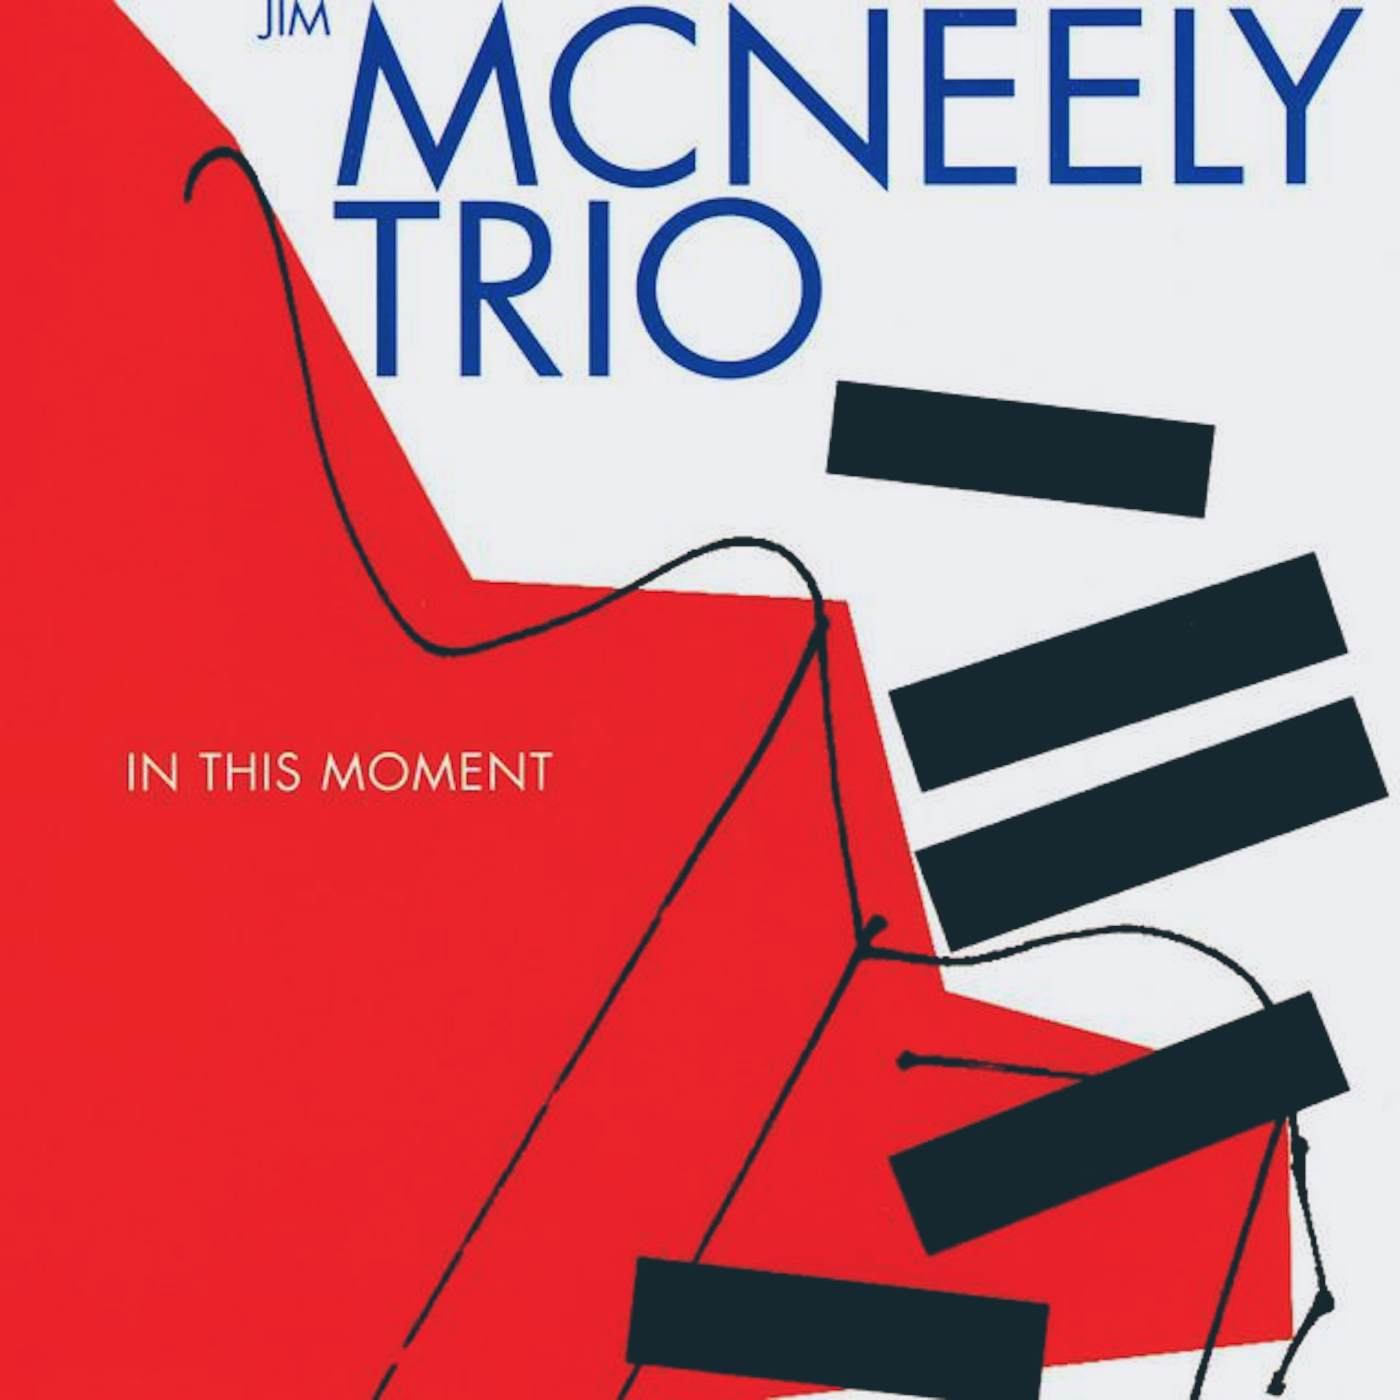 Jim McNeely Trio